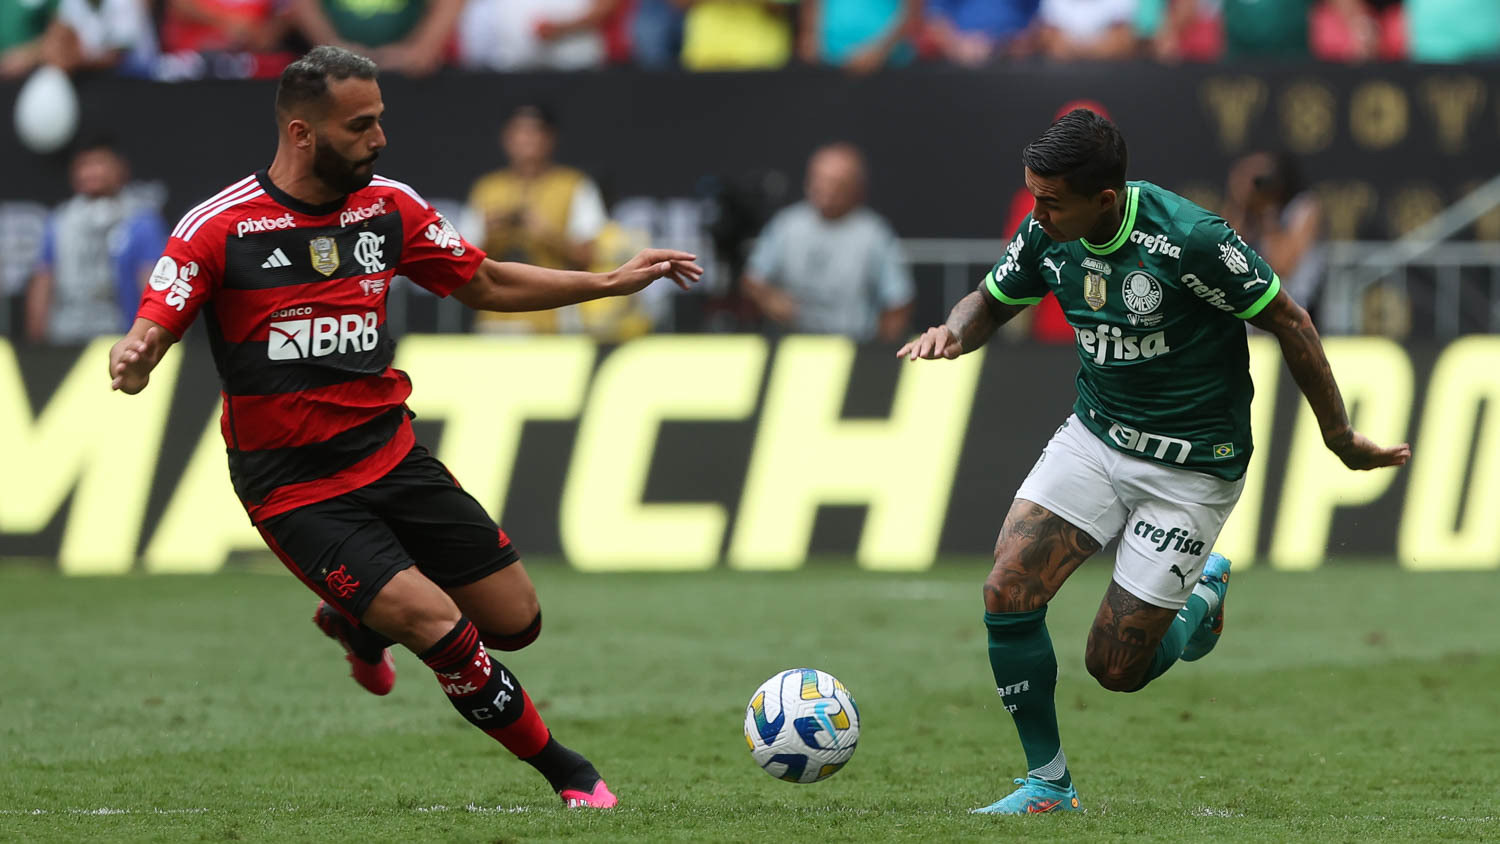 Com Flamengo e Palmeiras garantidos, Mundial de Clubes é